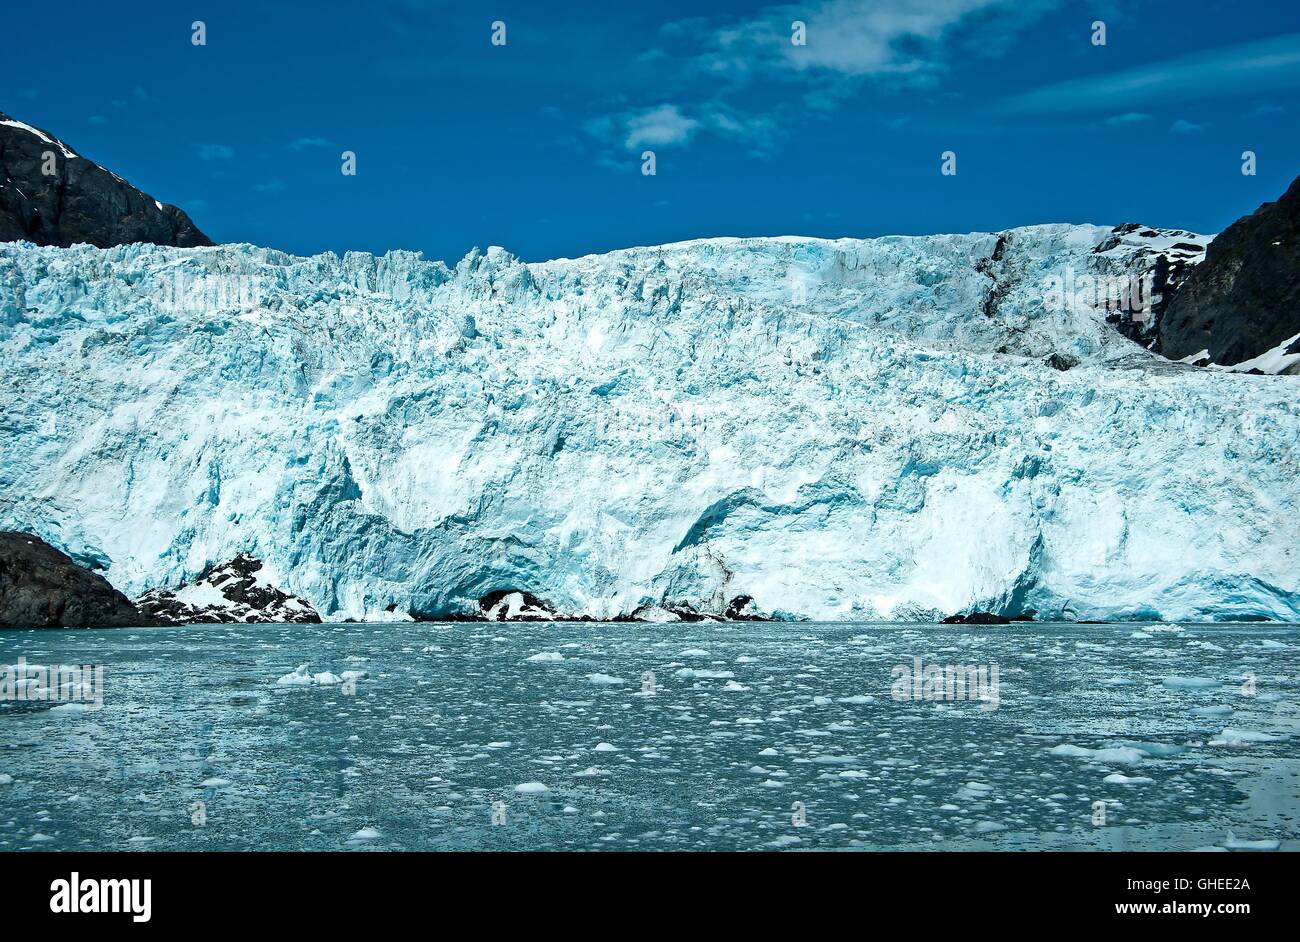 Il ghiacciaio dell'Alaska. Un ghiacciaio è un lento spostamento della massa o del fiume di ghiaccio formato dall'accumulo e compattazione della neve. Foto Stock